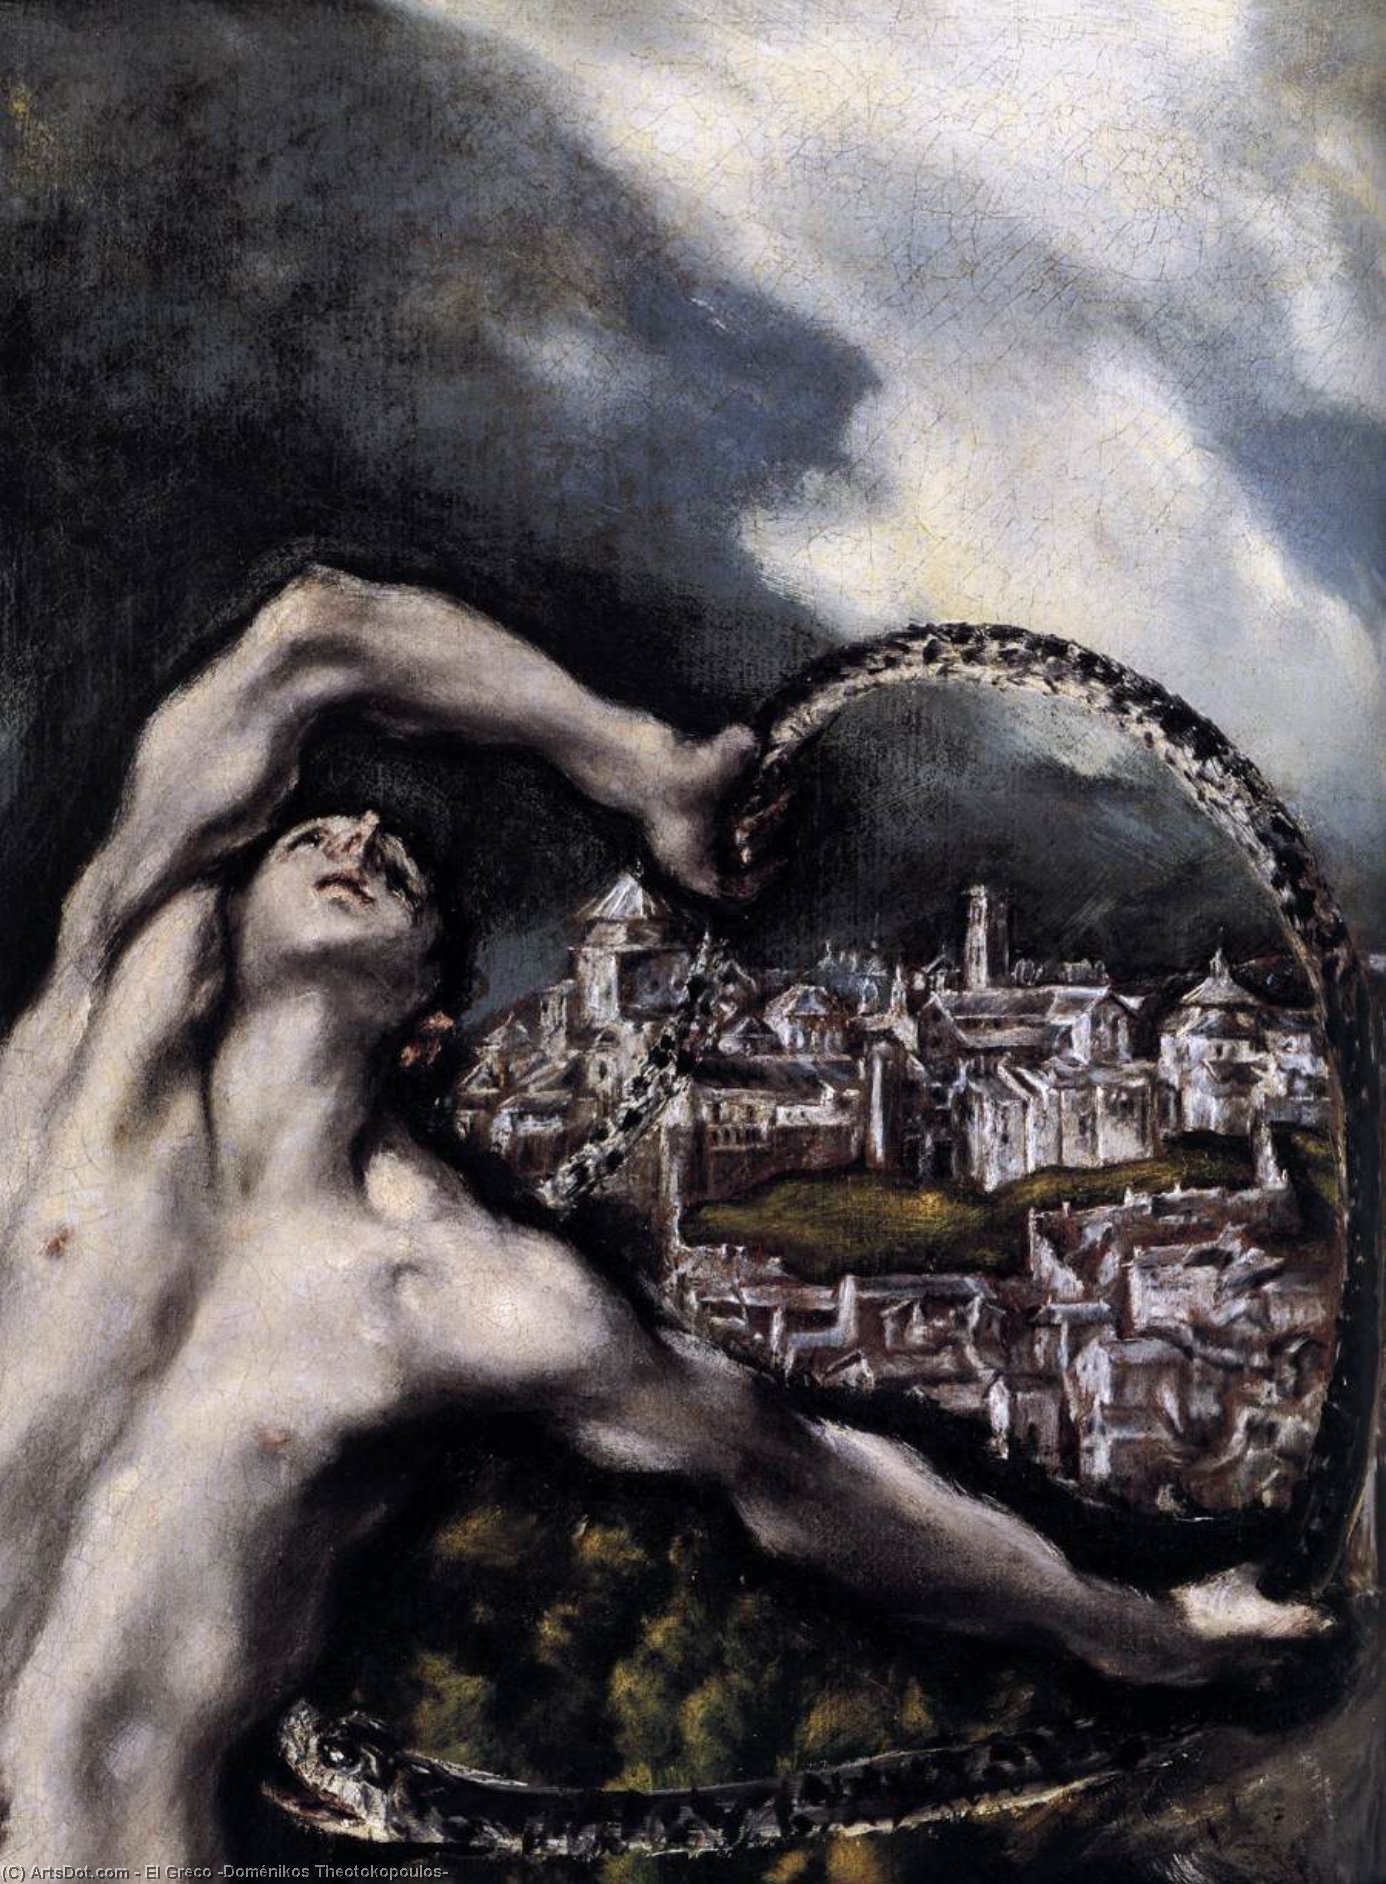 WikiOO.org - Encyclopedia of Fine Arts - Malba, Artwork El Greco (Doménikos Theotokopoulos) - Laocoön (detail)